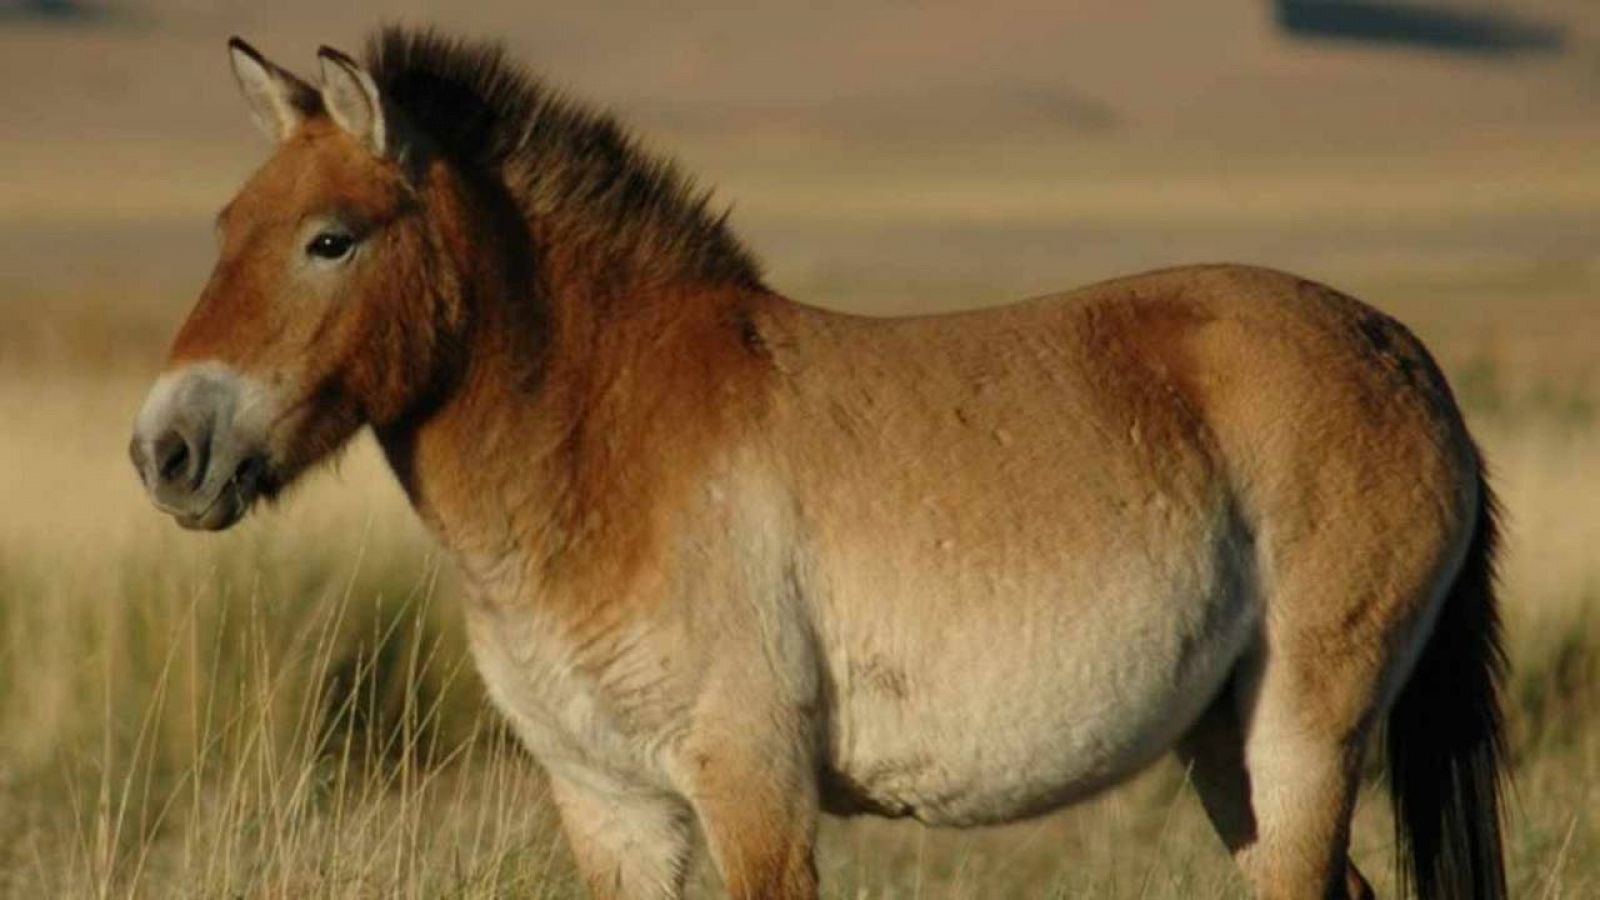 Según los investigadores, el cebro ibérico se parecería mucho a un caballo de Przewalski